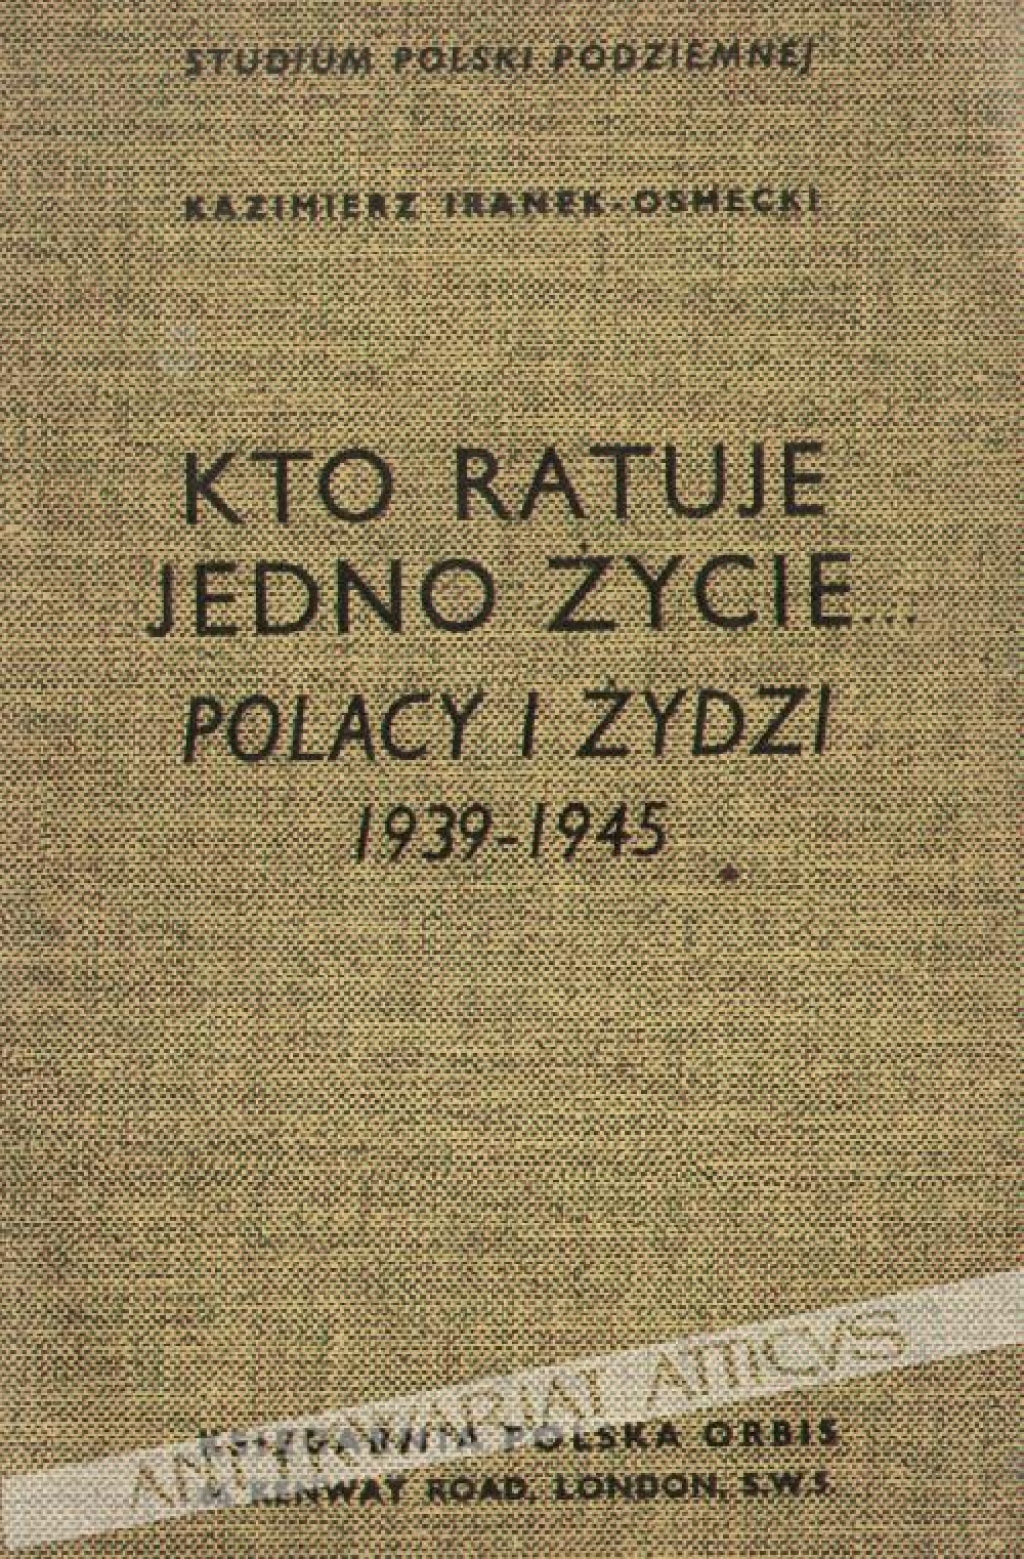 Kto ratuje jedno życie... Polacy i Żydzi 1939-1945